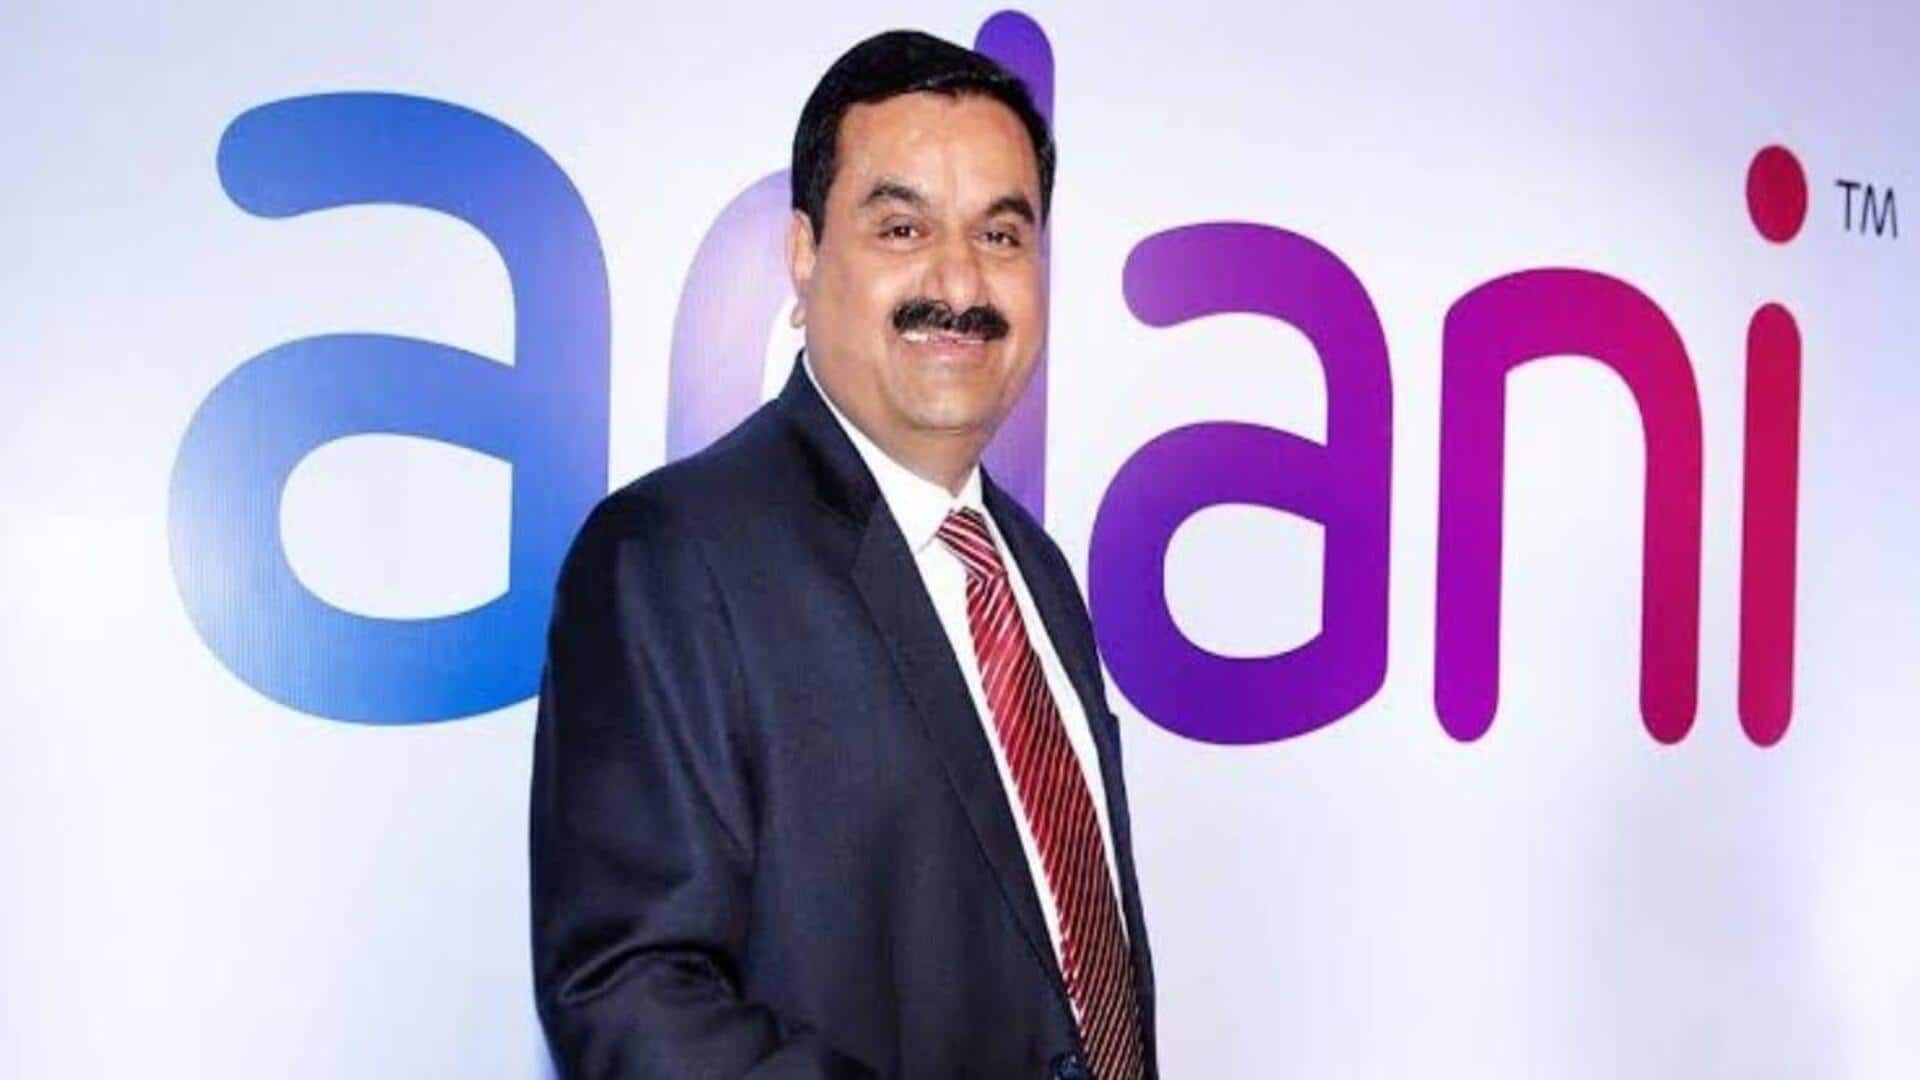 Adani Enterprises's Q4 net profit declines 38% to ₹451 crore